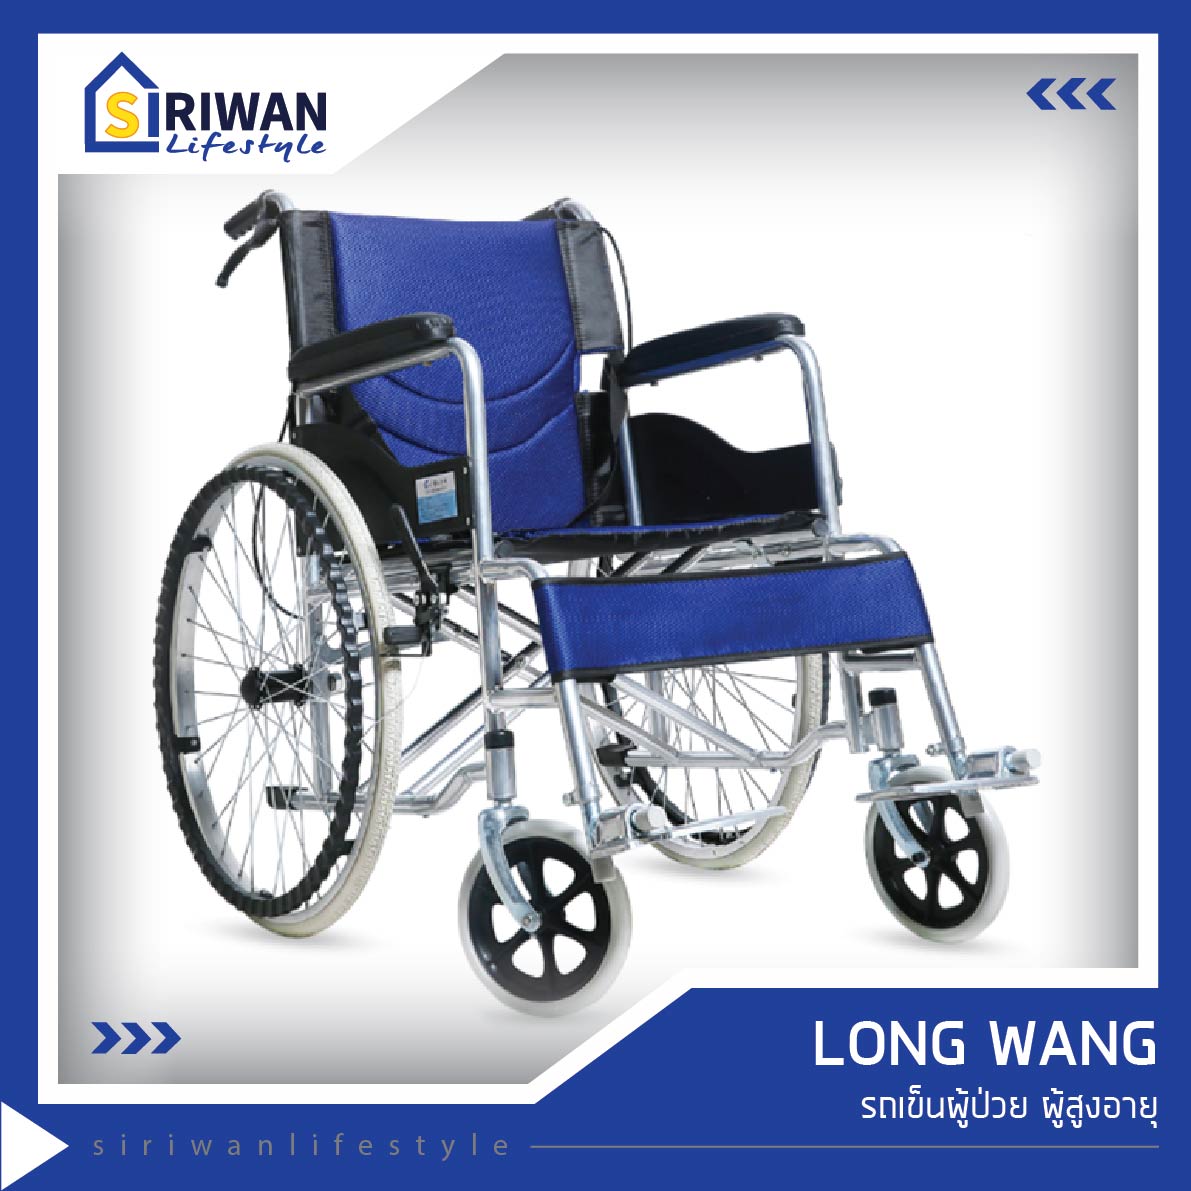 Long Wang รถเข็นผู้ป่วย ผู้สูงอายุ น้ำหนักเบา พับเก็บได้ แข็งแรง พกพาสะดวก รับน้ำหนักได้ 100กก. รุ่นSYIV100-GSR02